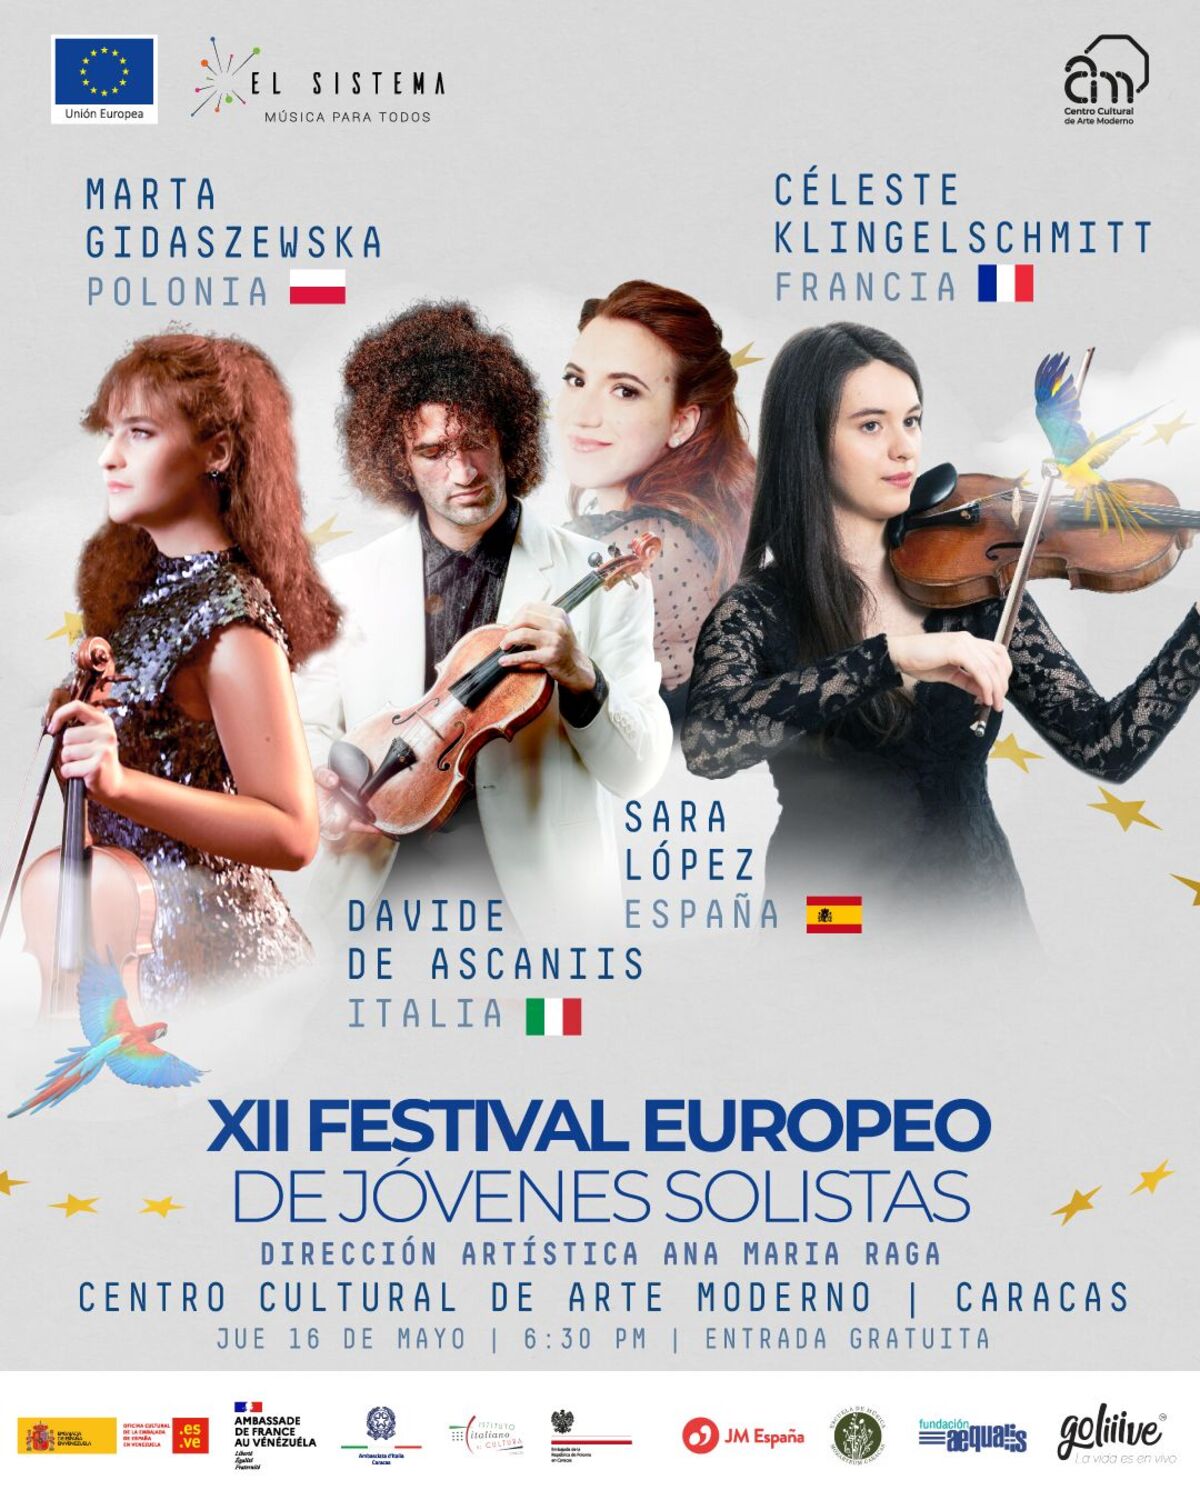 Festival Europeo de Jóvenes Solistas